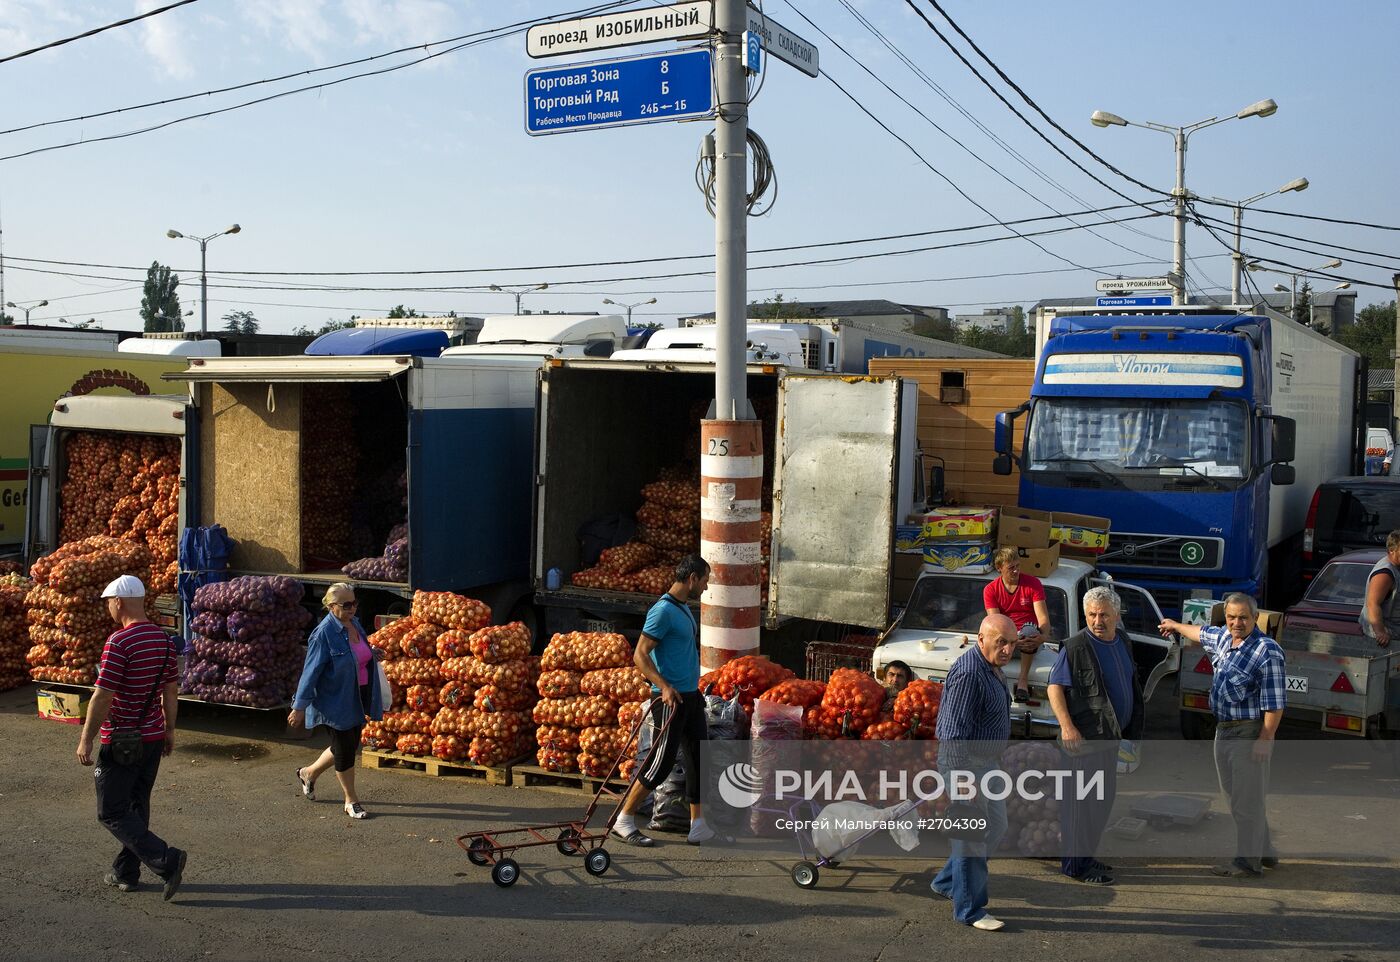 Оптово-розничный рынок "Привоз" в Симферополе